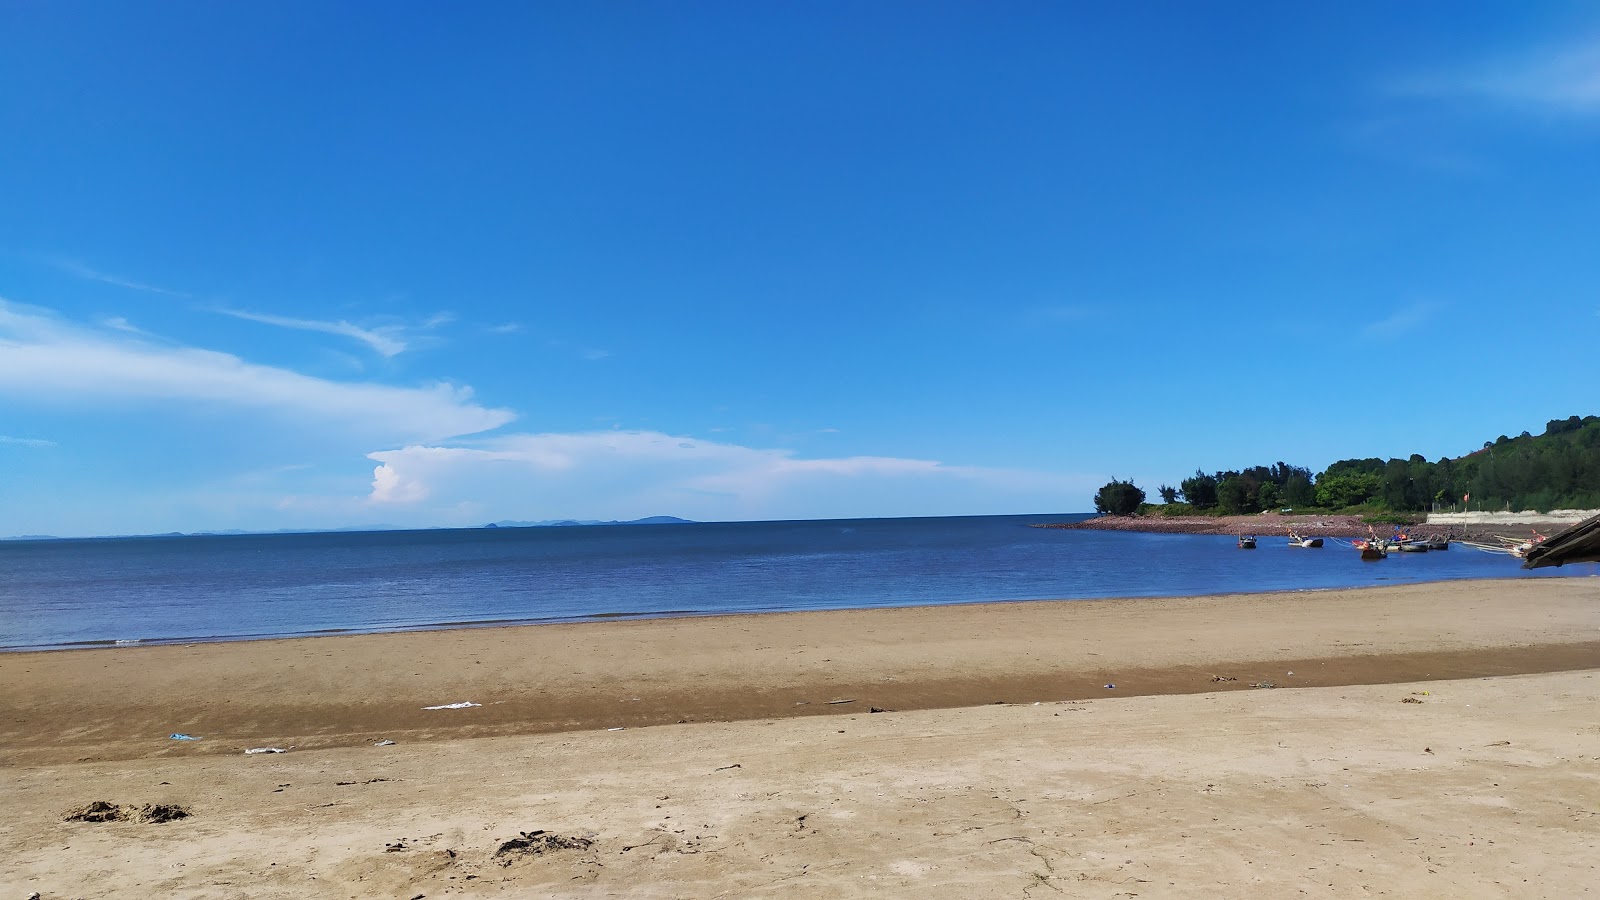 Foto de Cua Hien Beach - lugar popular entre los conocedores del relax